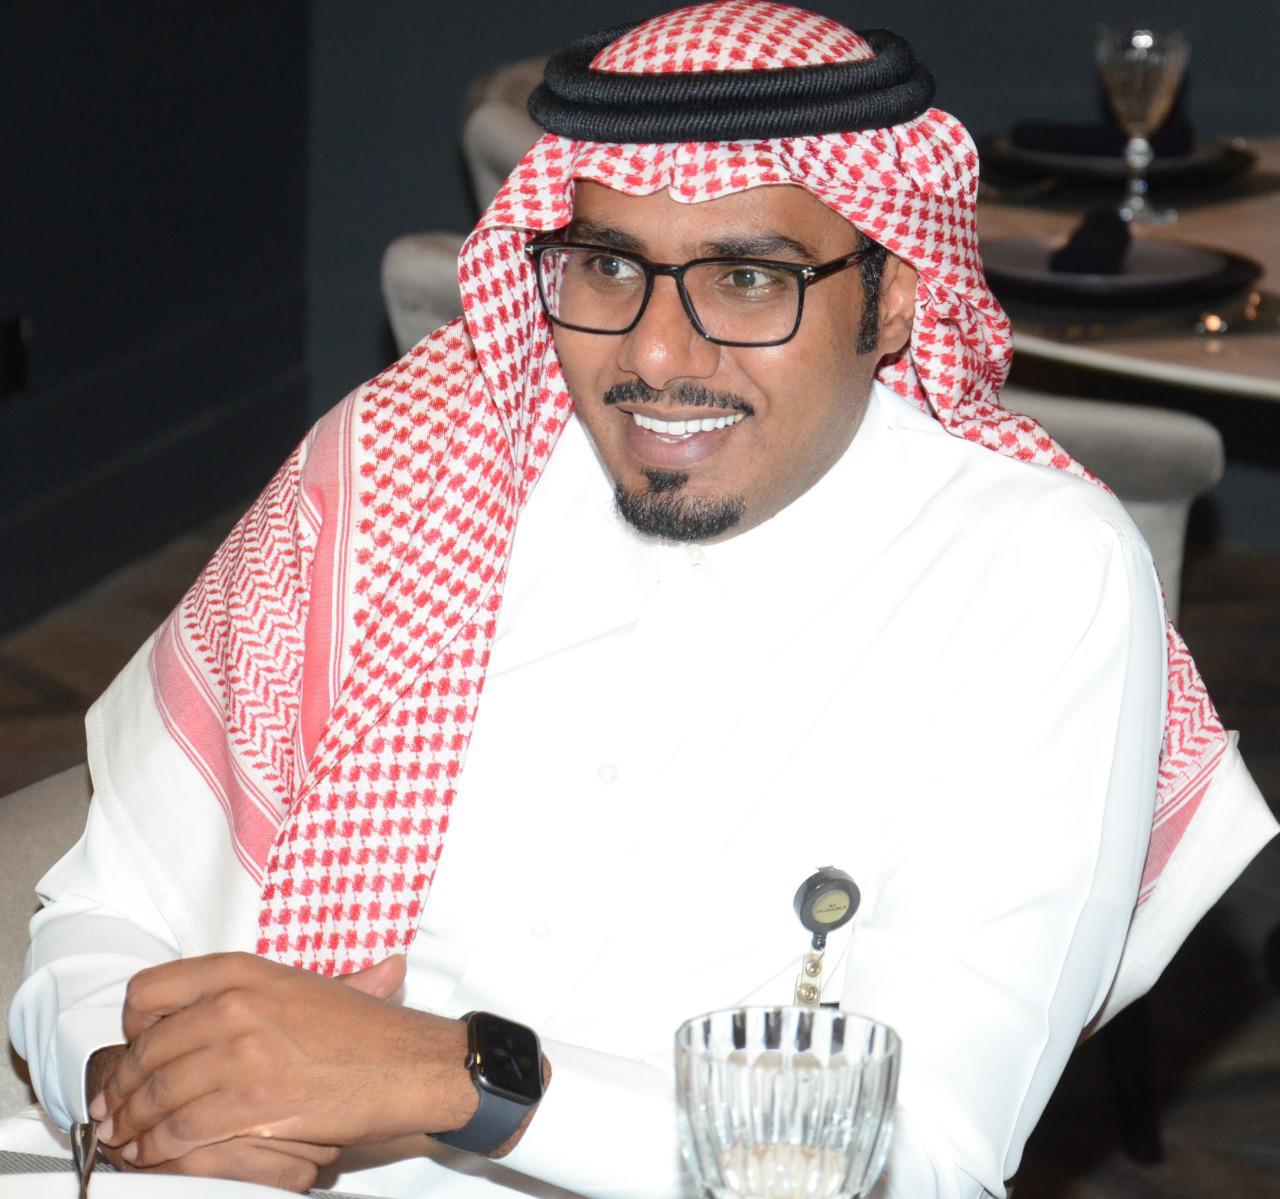 اول نادي متخصص لسيدات ورجال الأعمال والأفراد والشركات في المملكة العربية السعودية